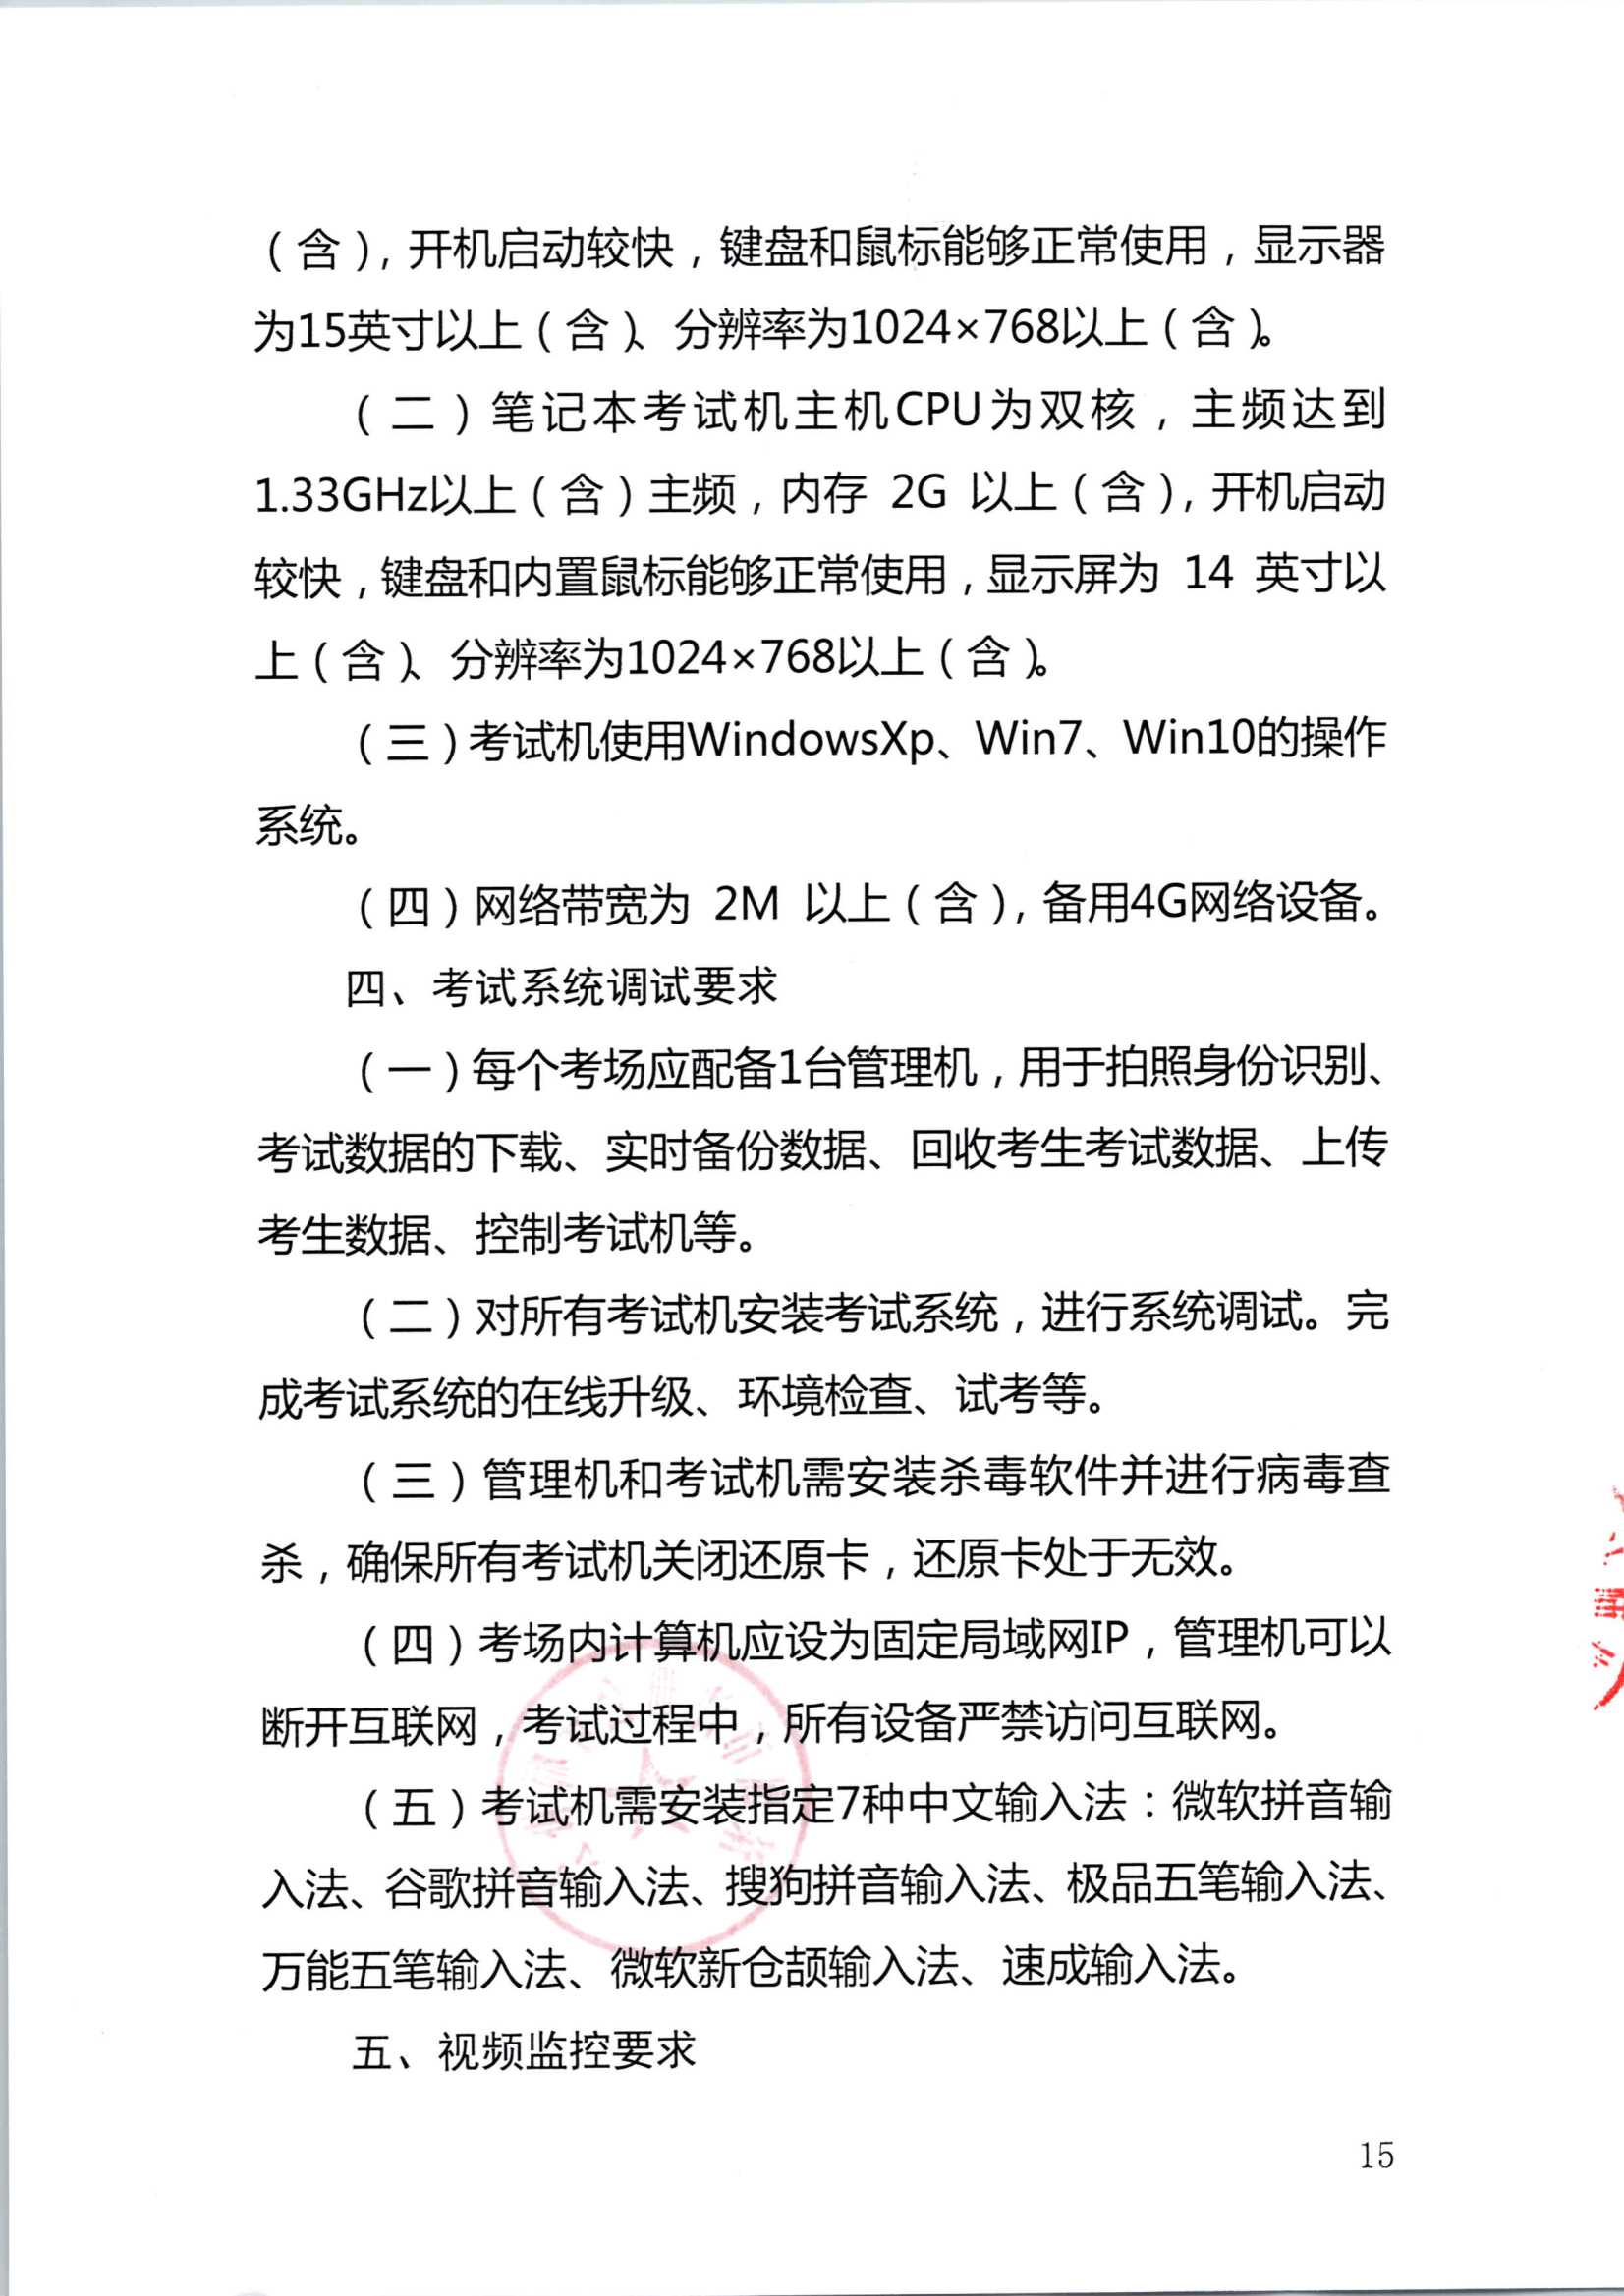 2020年注册会计师全国统一考试深圳考区工作方案_15.Png